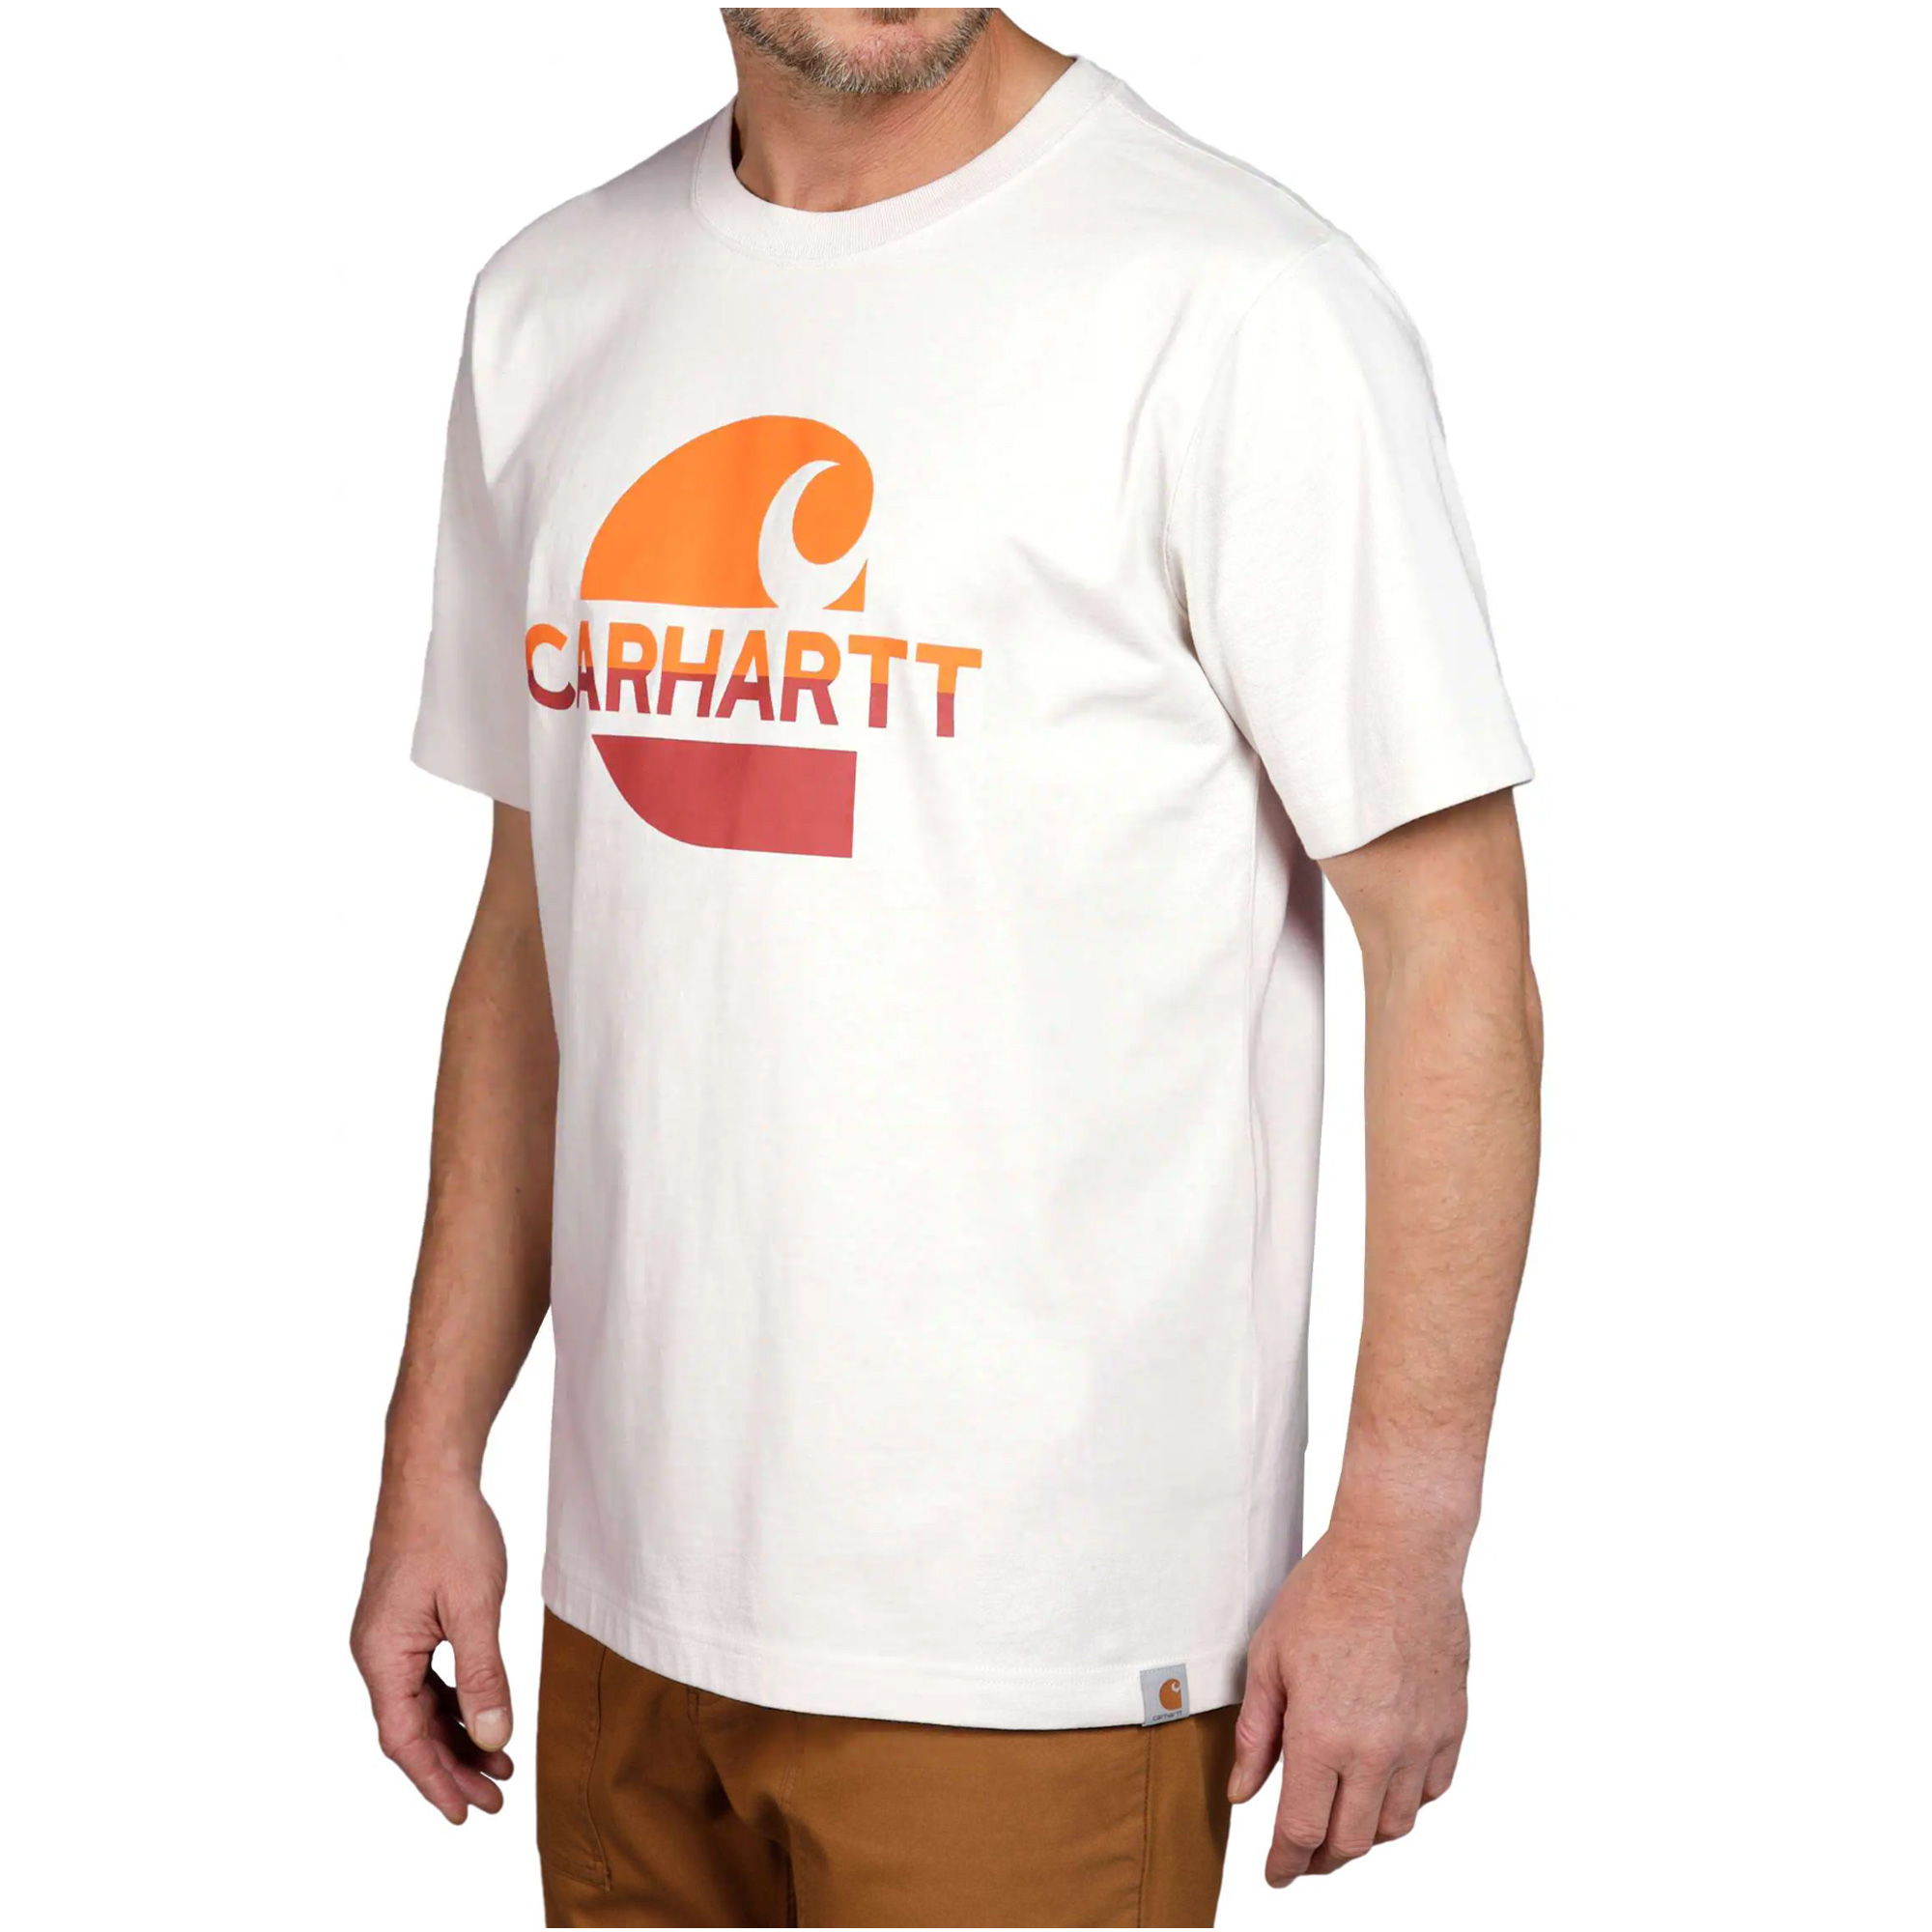 Carhartt Relaxed Fit Heavyweight S/S 'C' Graphic T-Shirt ecru (ABVERKAUF)